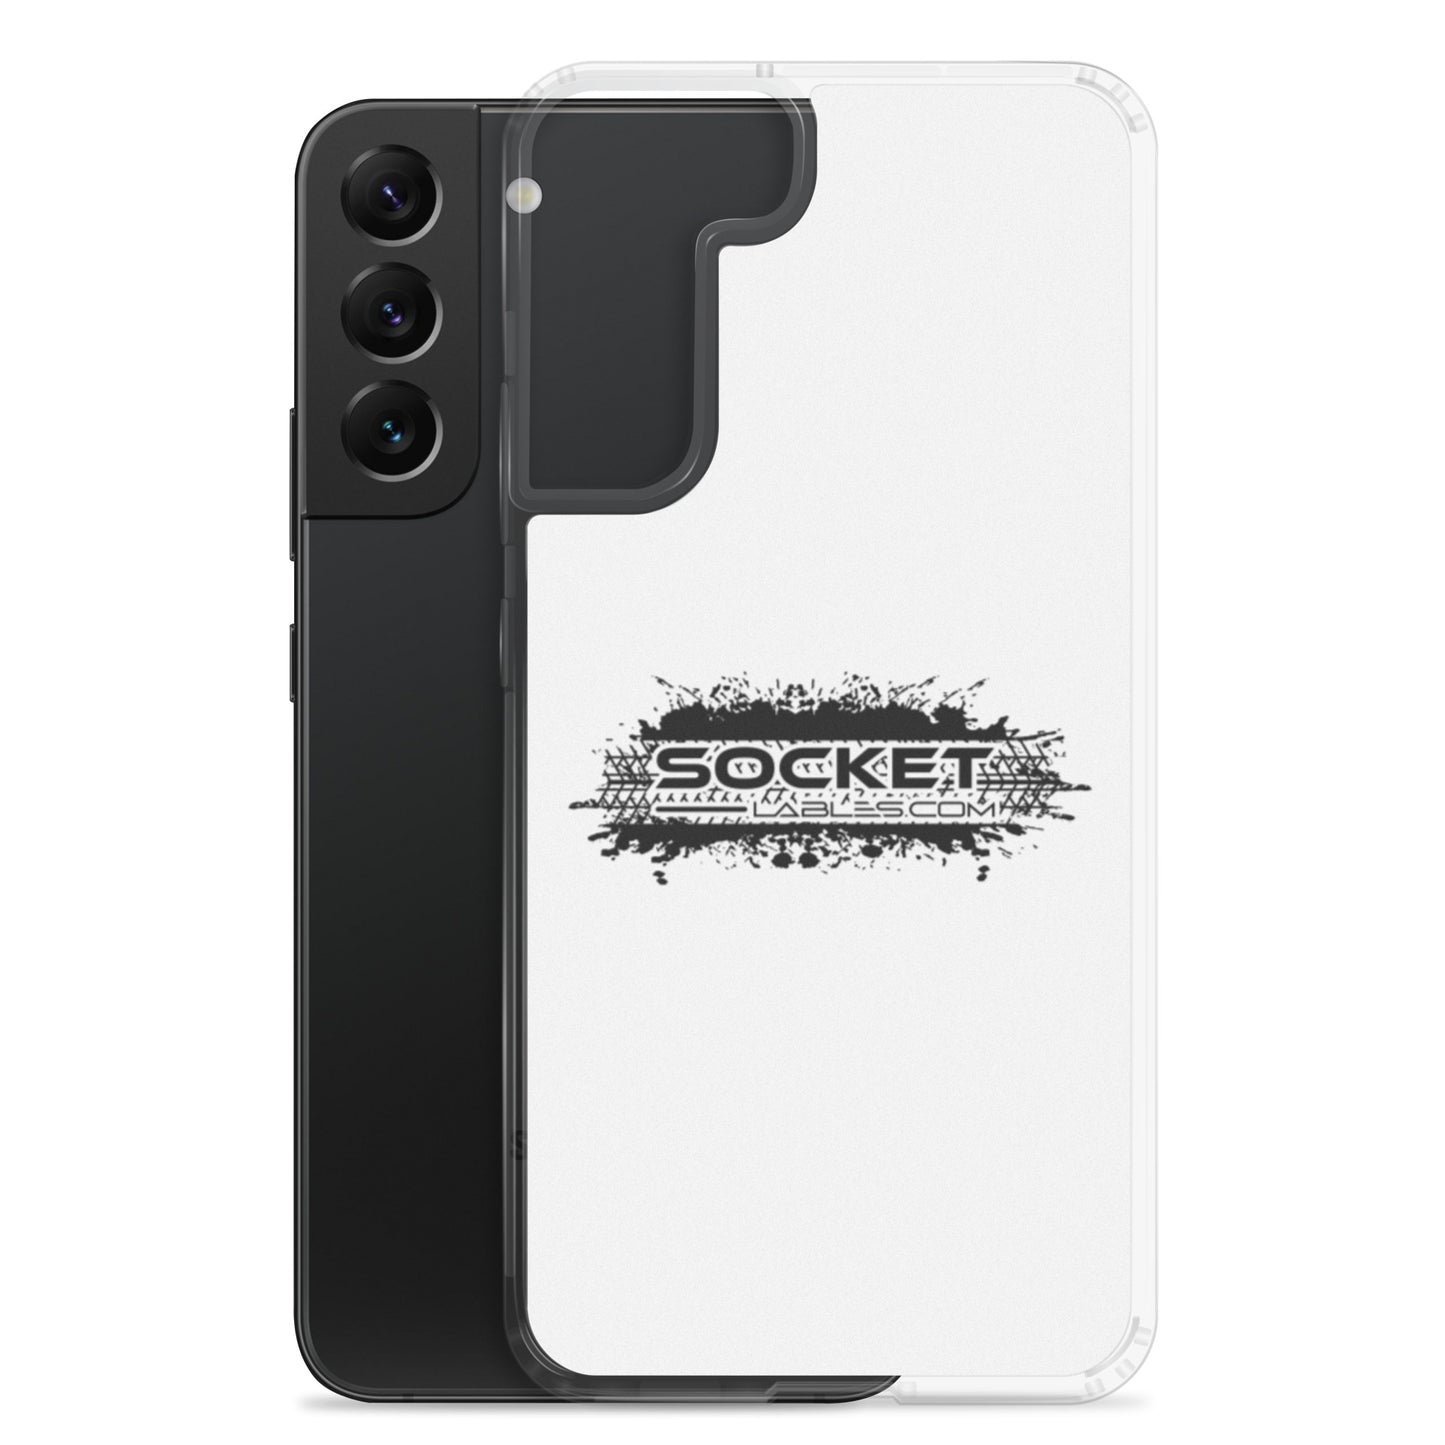 Socket Labels.com Samsung Case